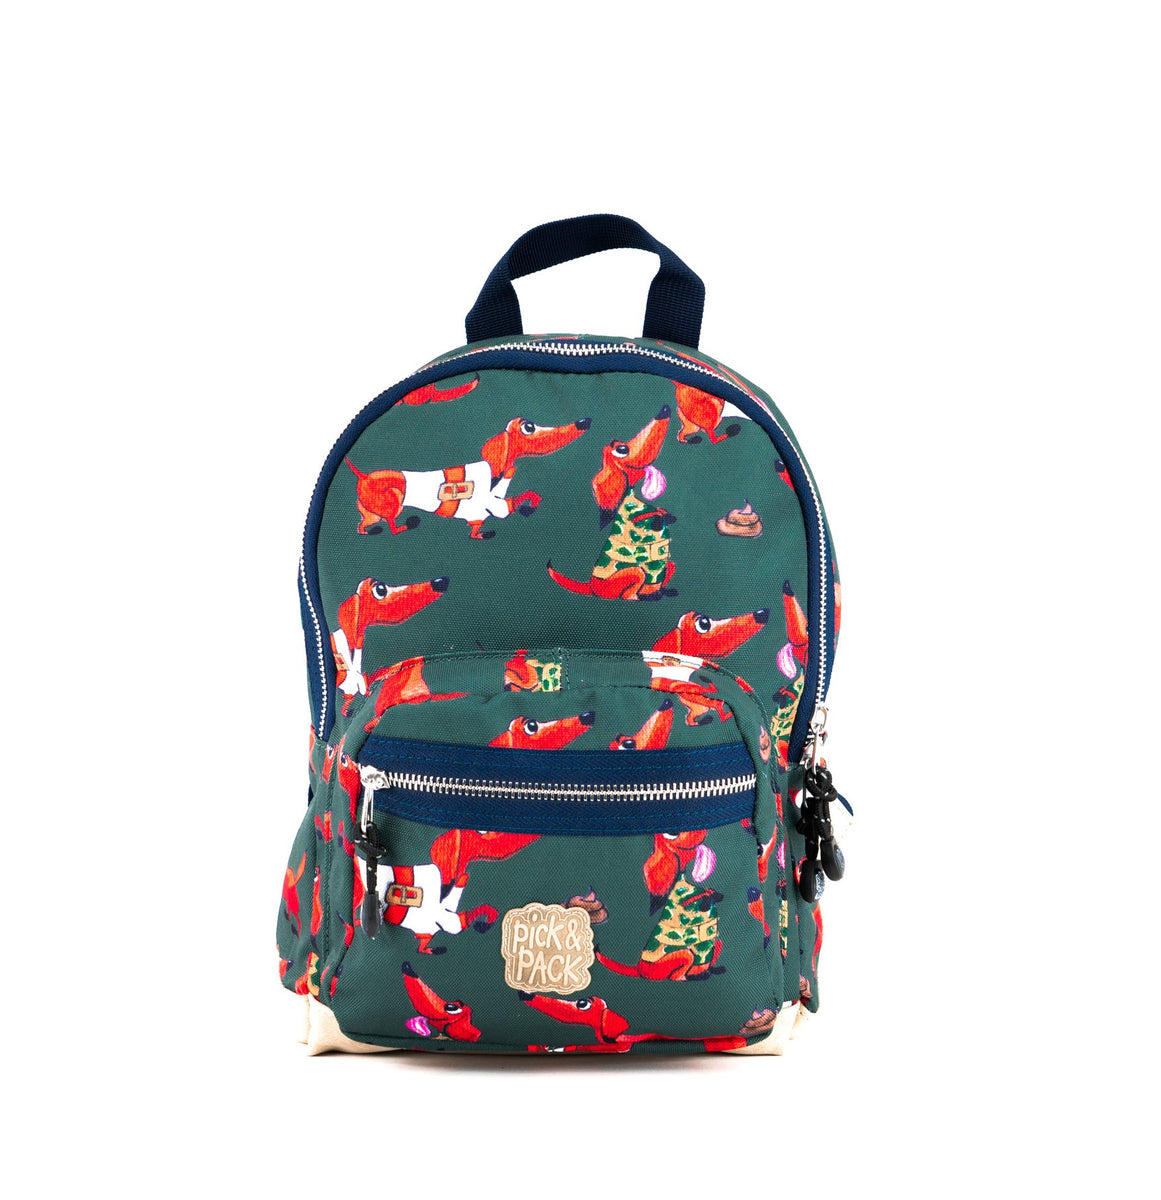 Wiener S Kakigroen – pickpackbags.com